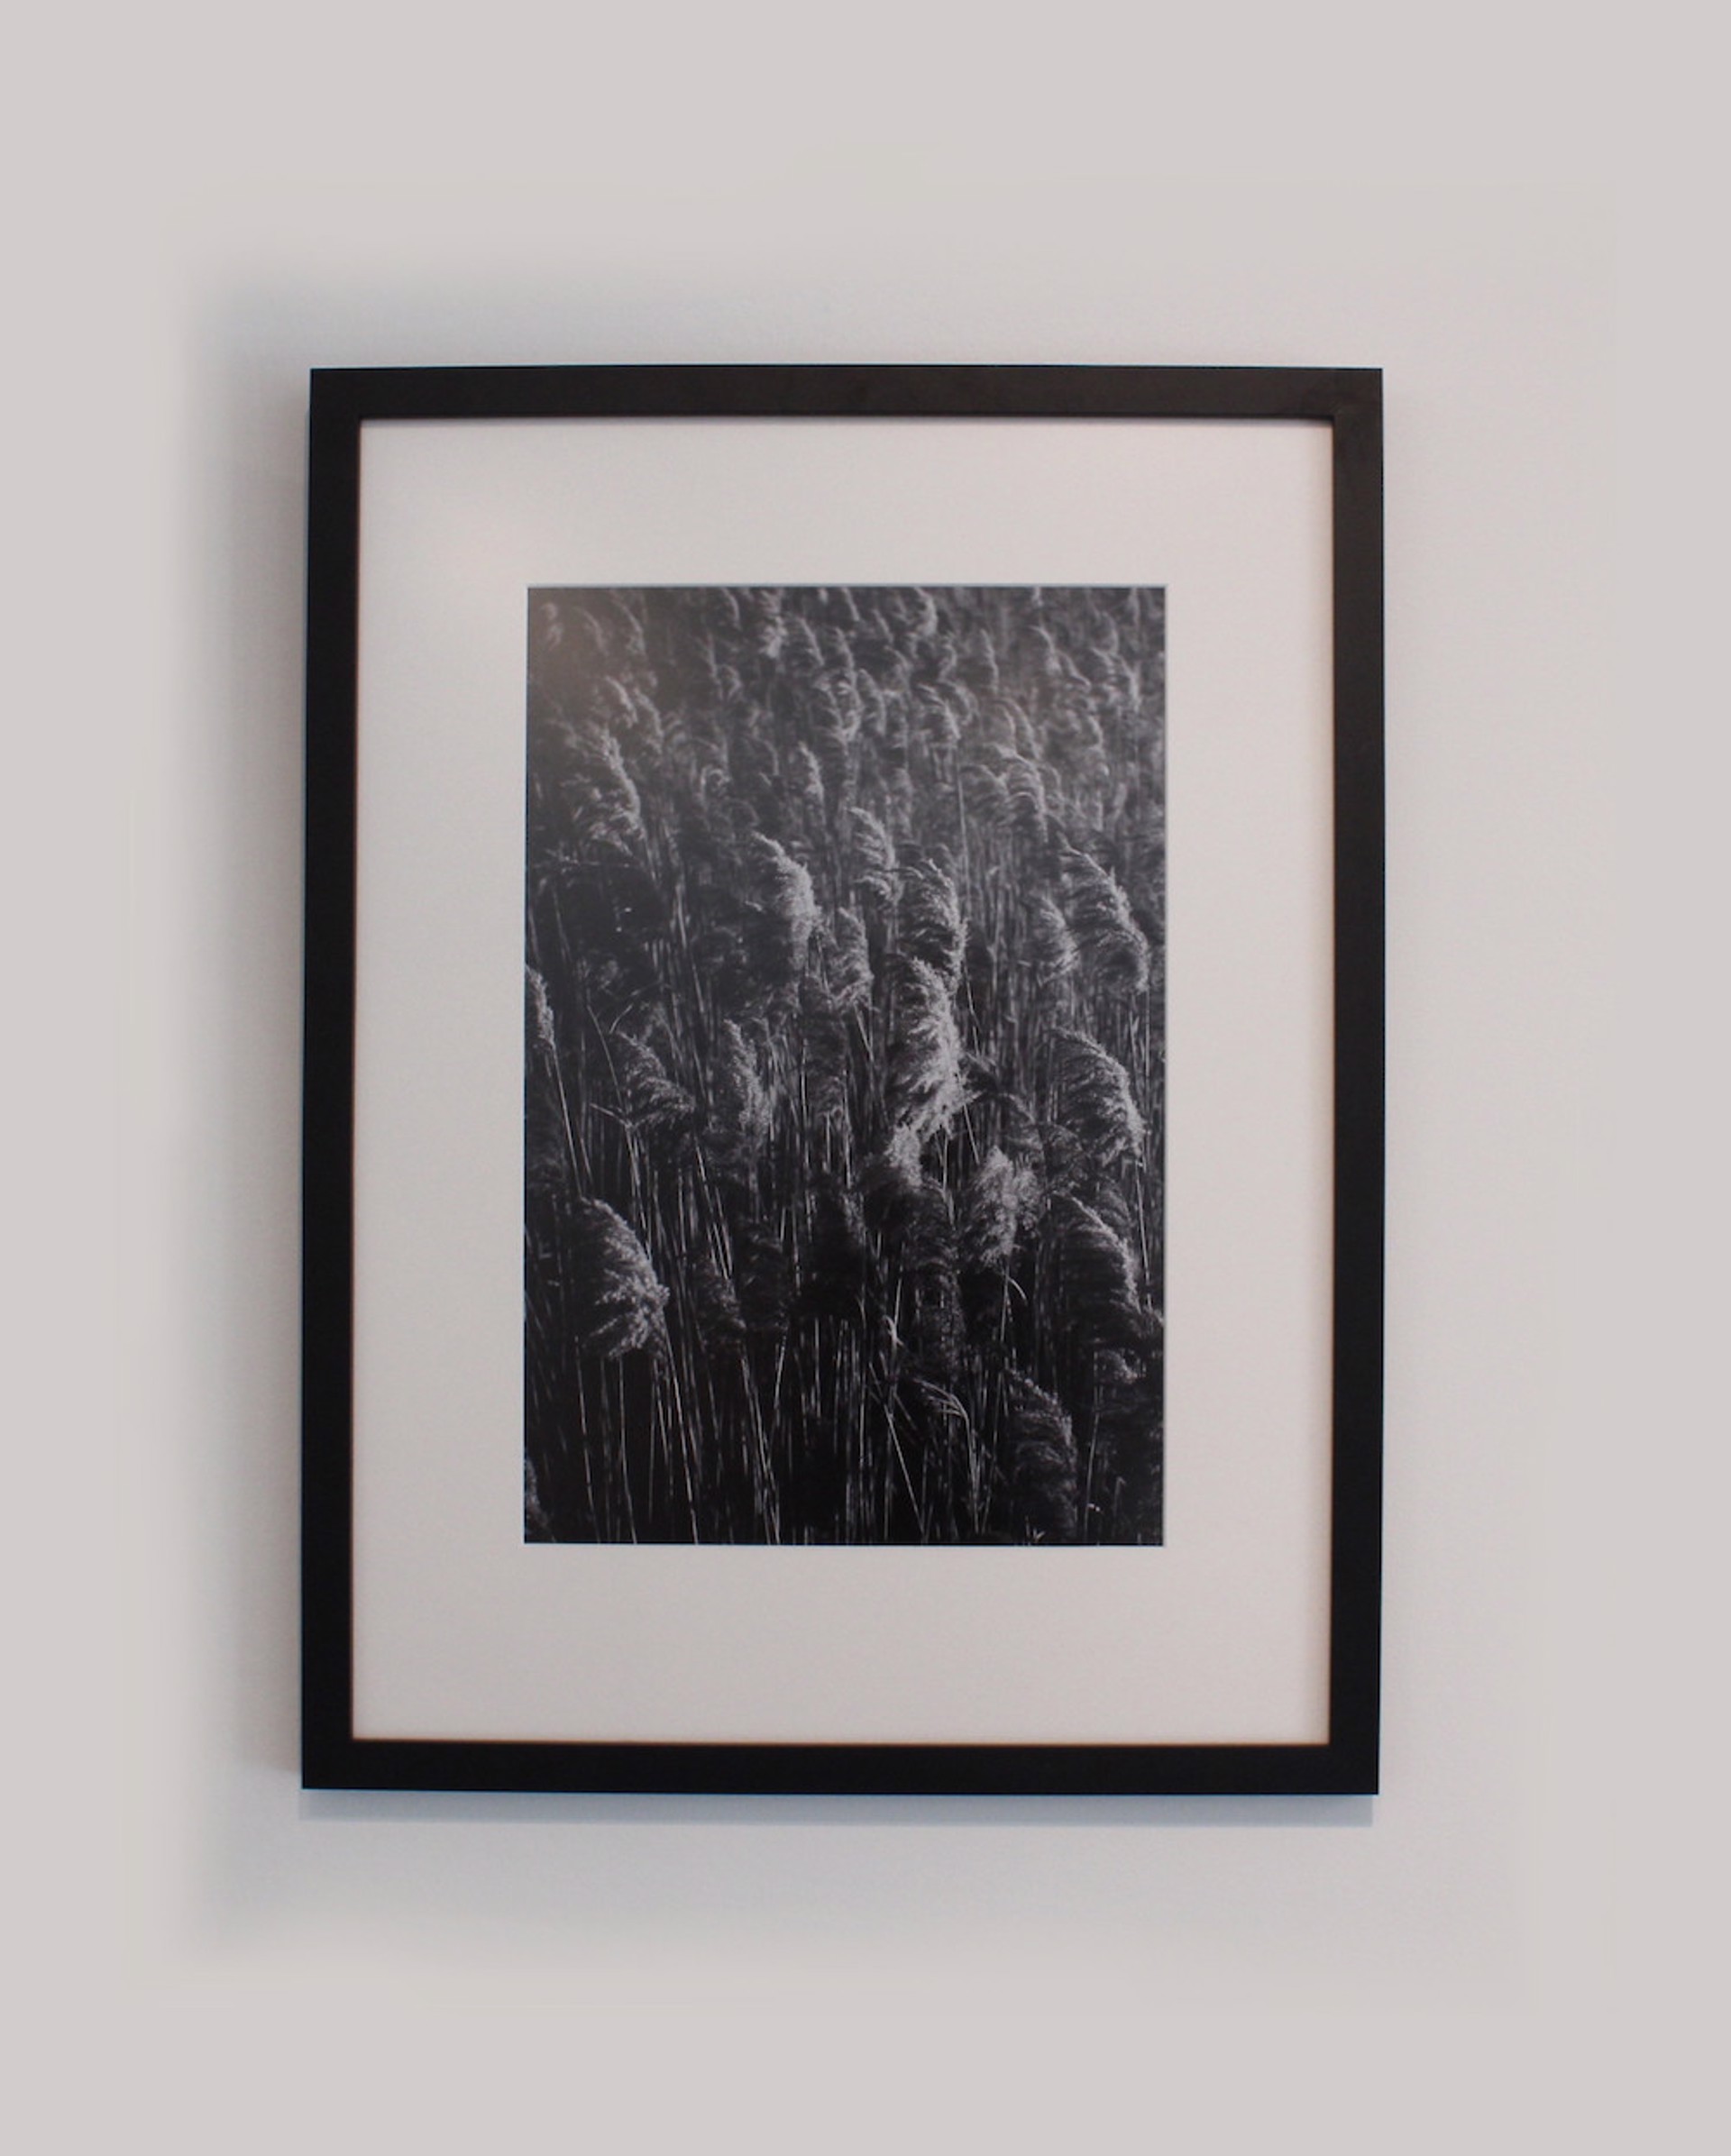 Winter Reeds by Keli Watson